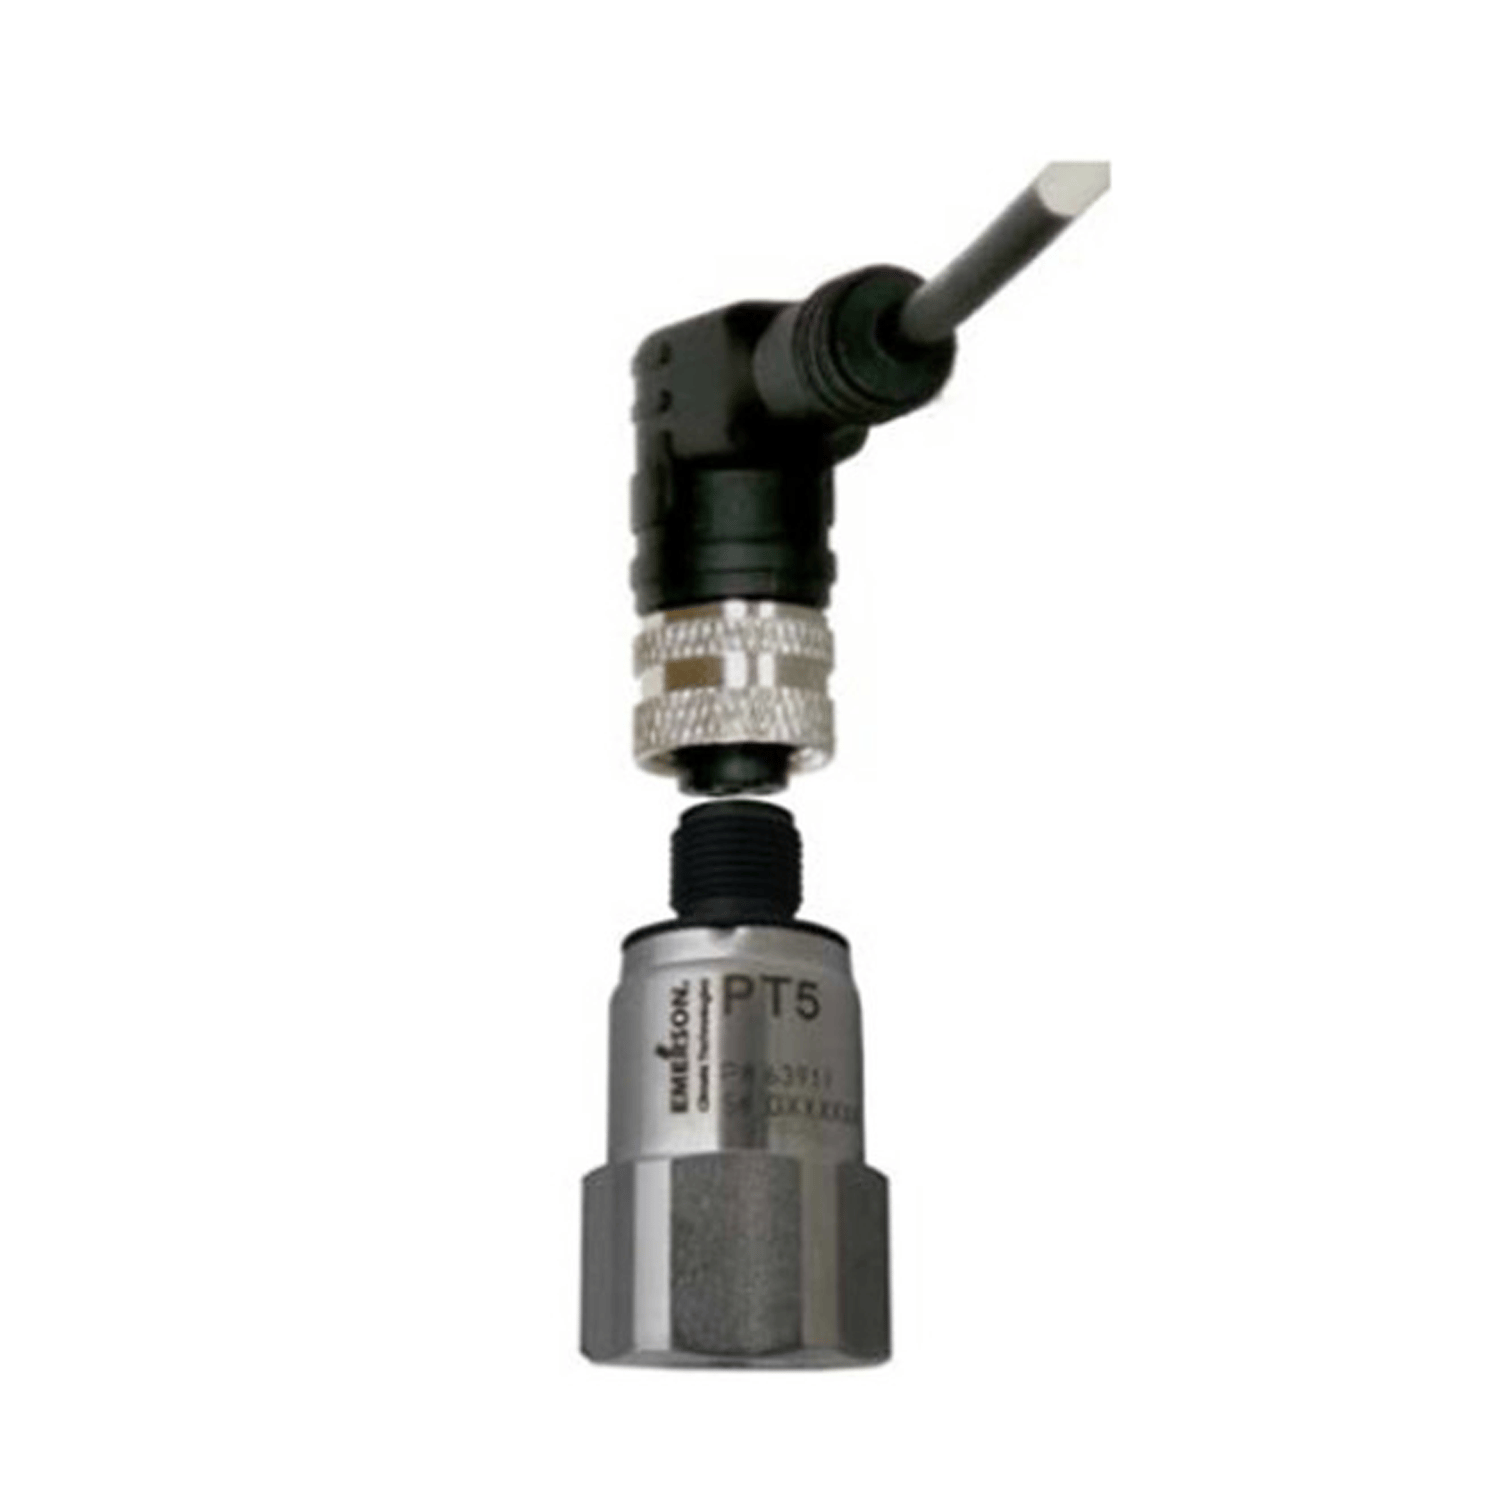 Pressure probe ALCO, PT5-07M/805350, 0.8-7 bar